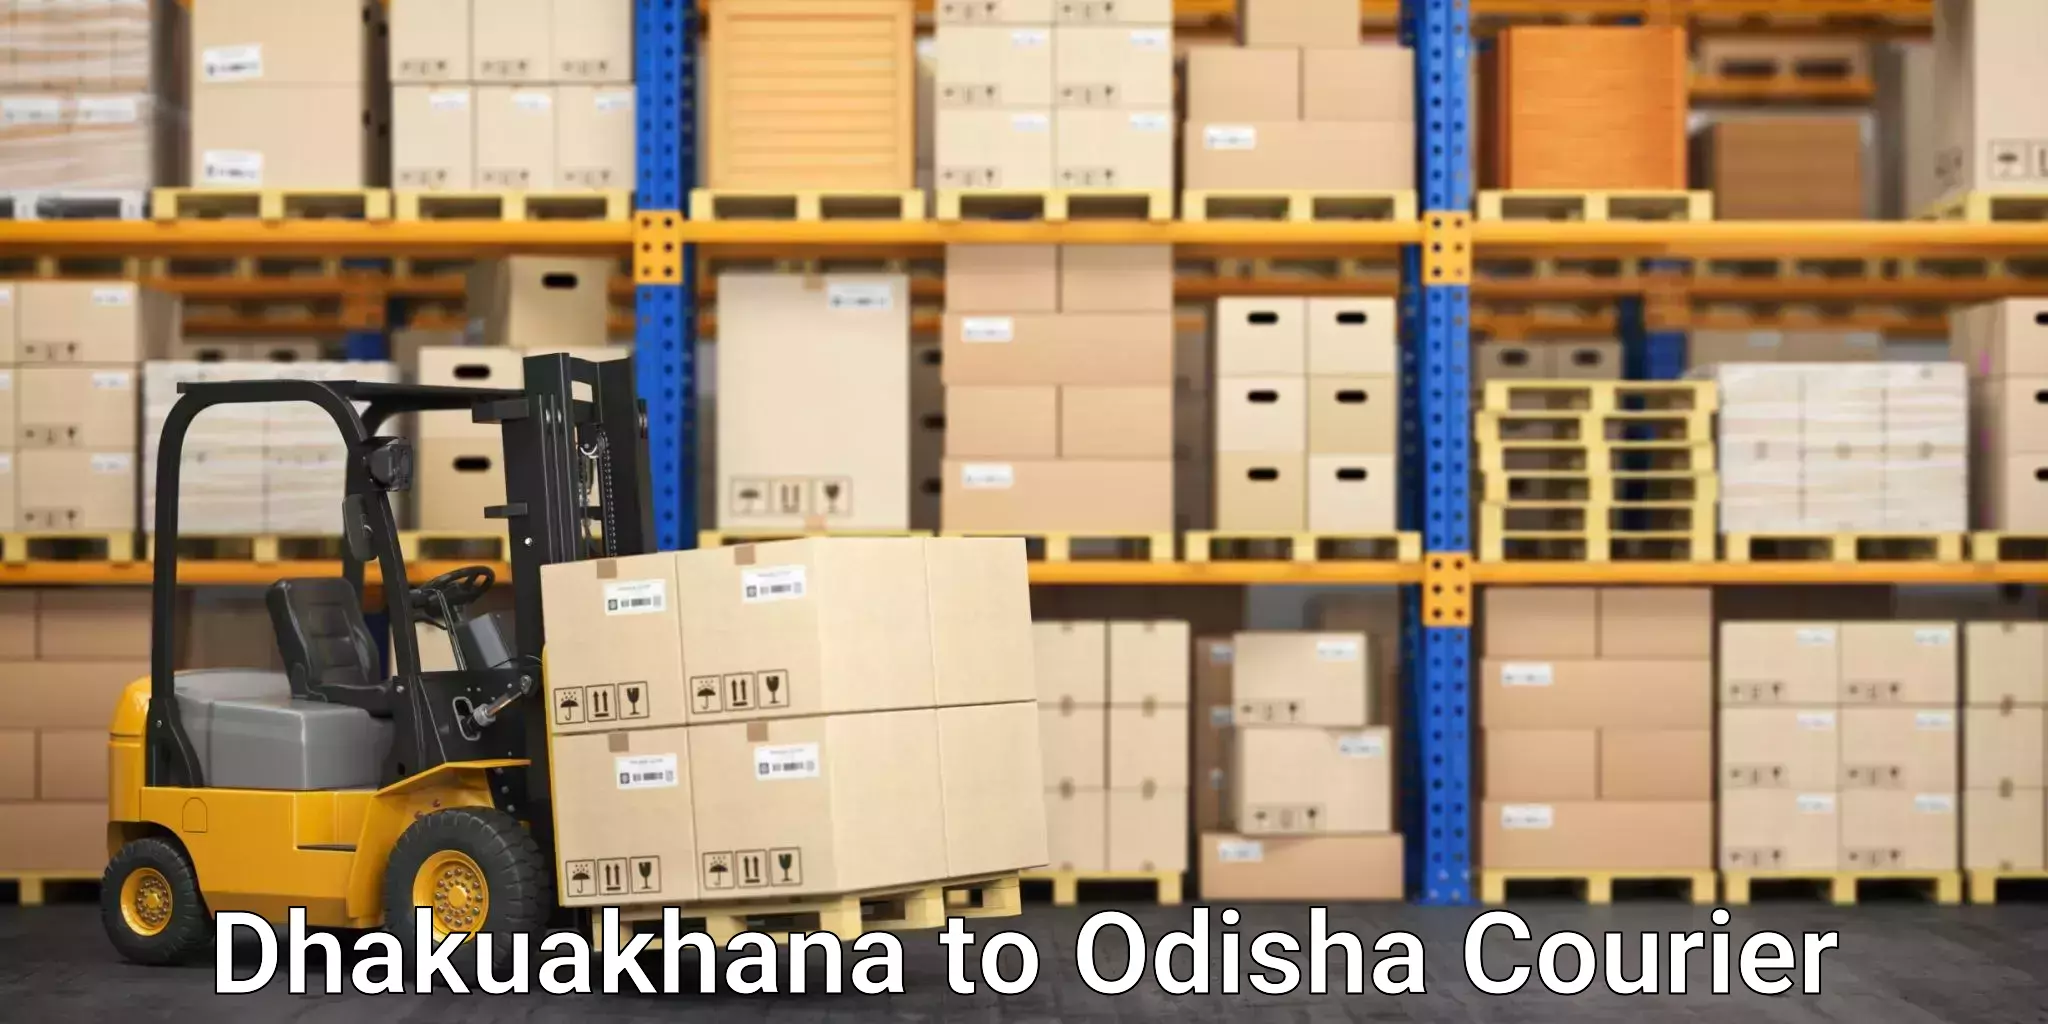 Global shipping networks Dhakuakhana to Balinga